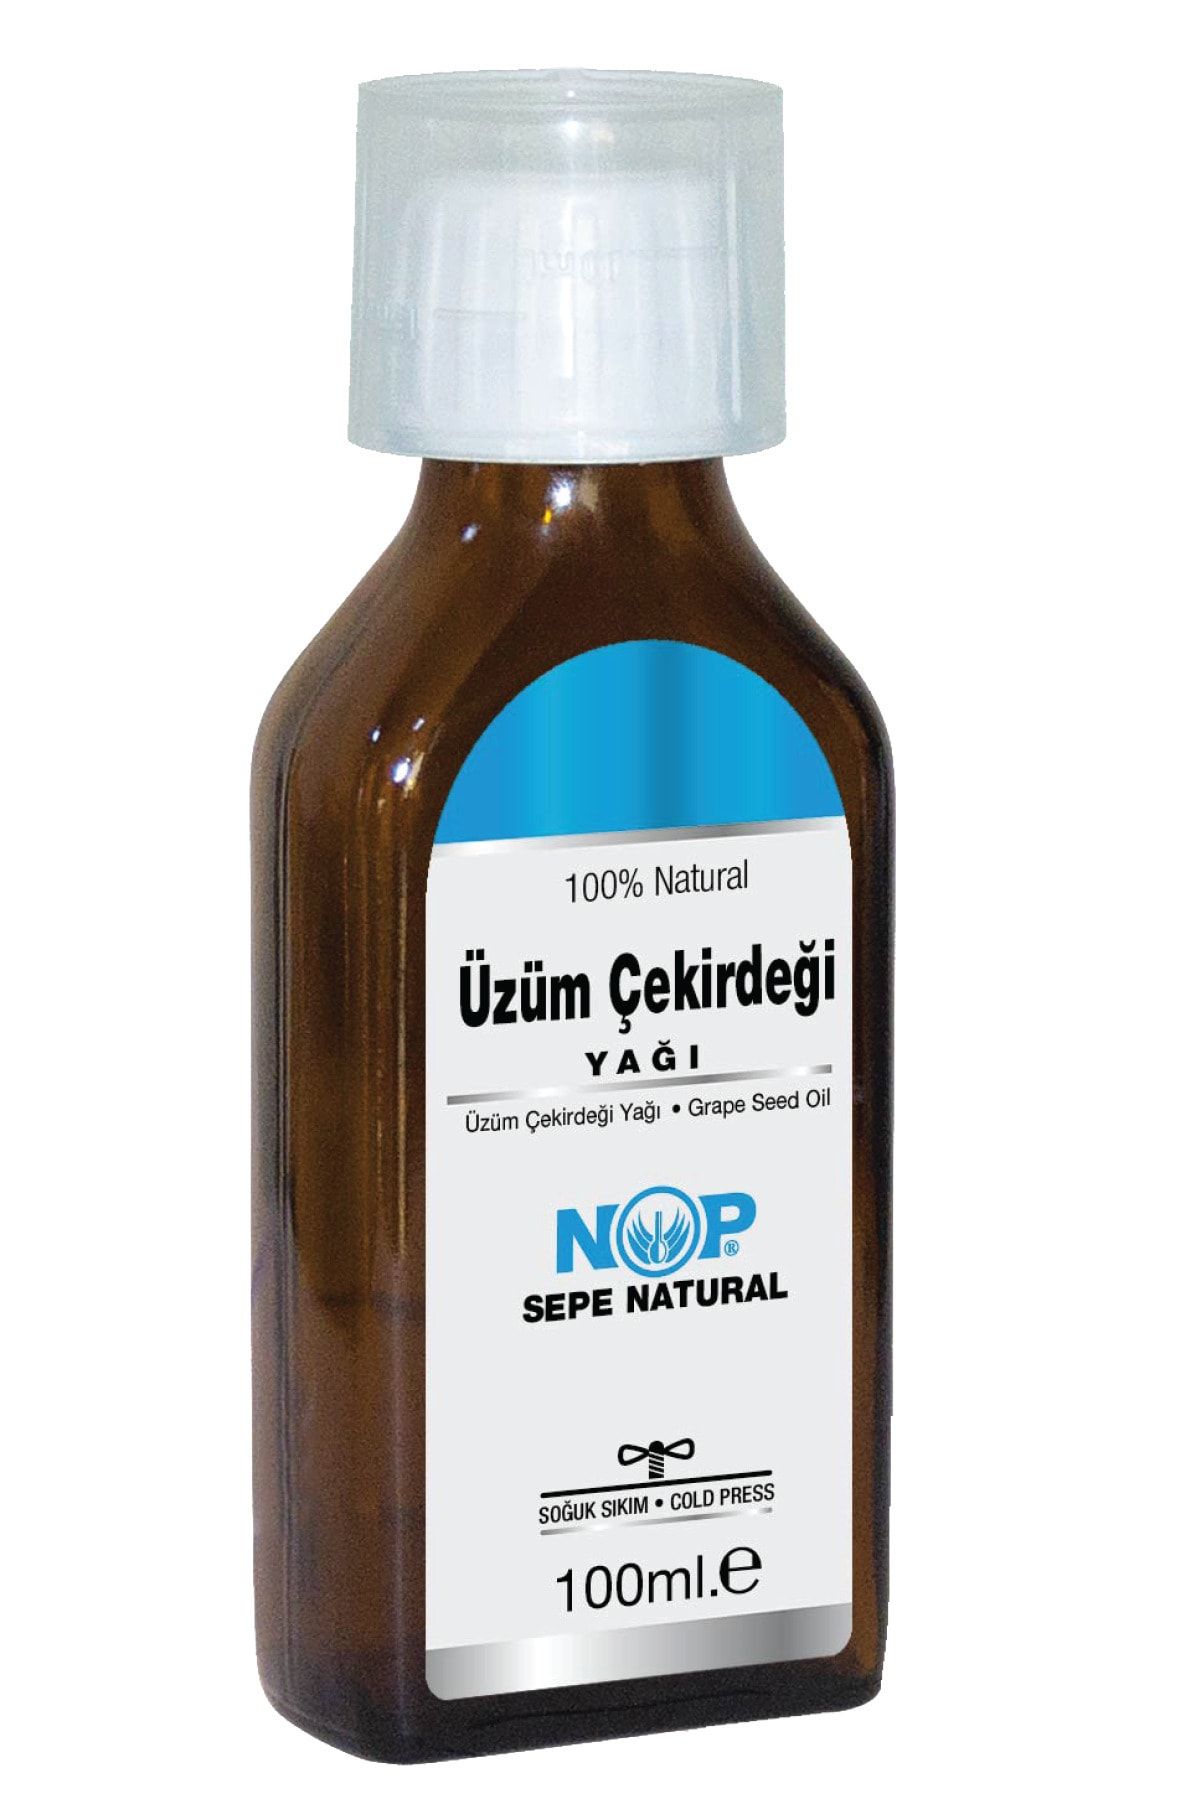 Sepe Natural Nop Üzüm Çekirdeği Yağı 100 Ml Soğuk Sıkım Grape Seed Oil